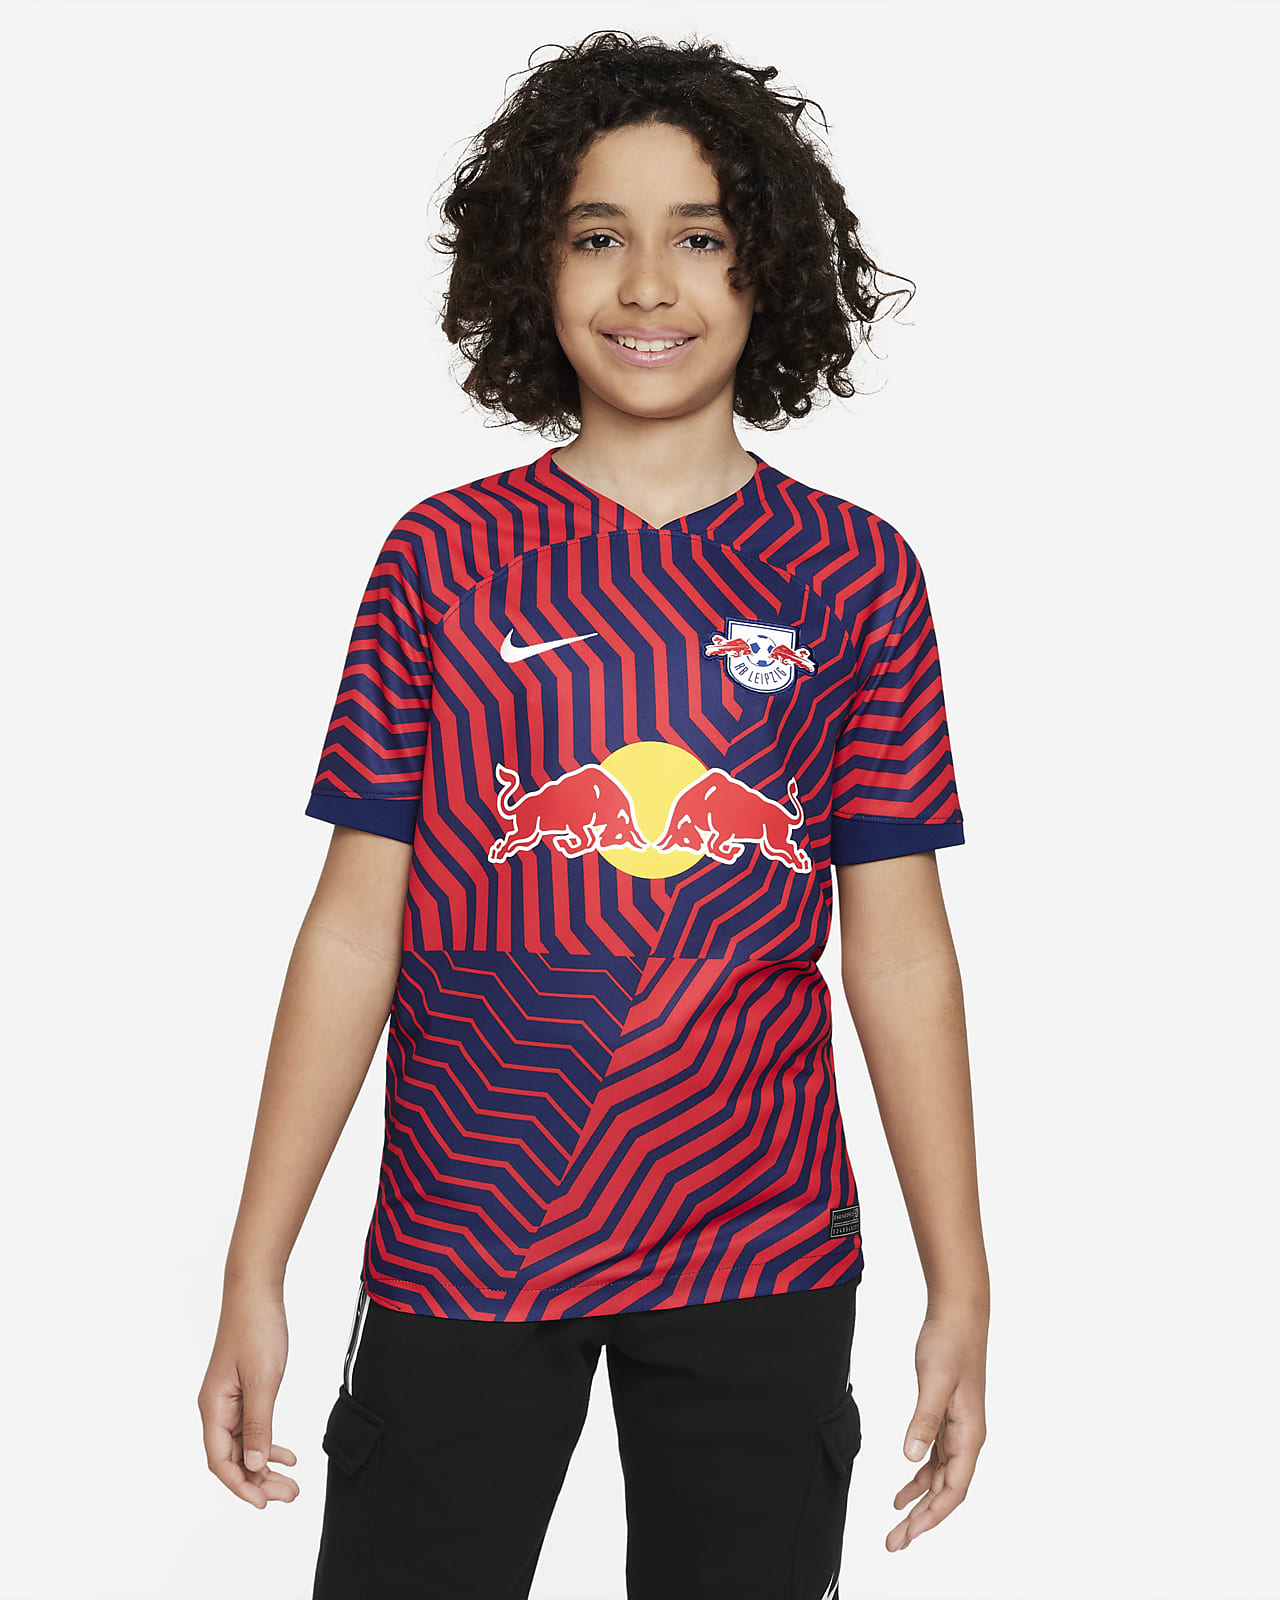 RB Leipzig 2023/24 Stadium Home Men's Nike Dri-FIT Football Shirt